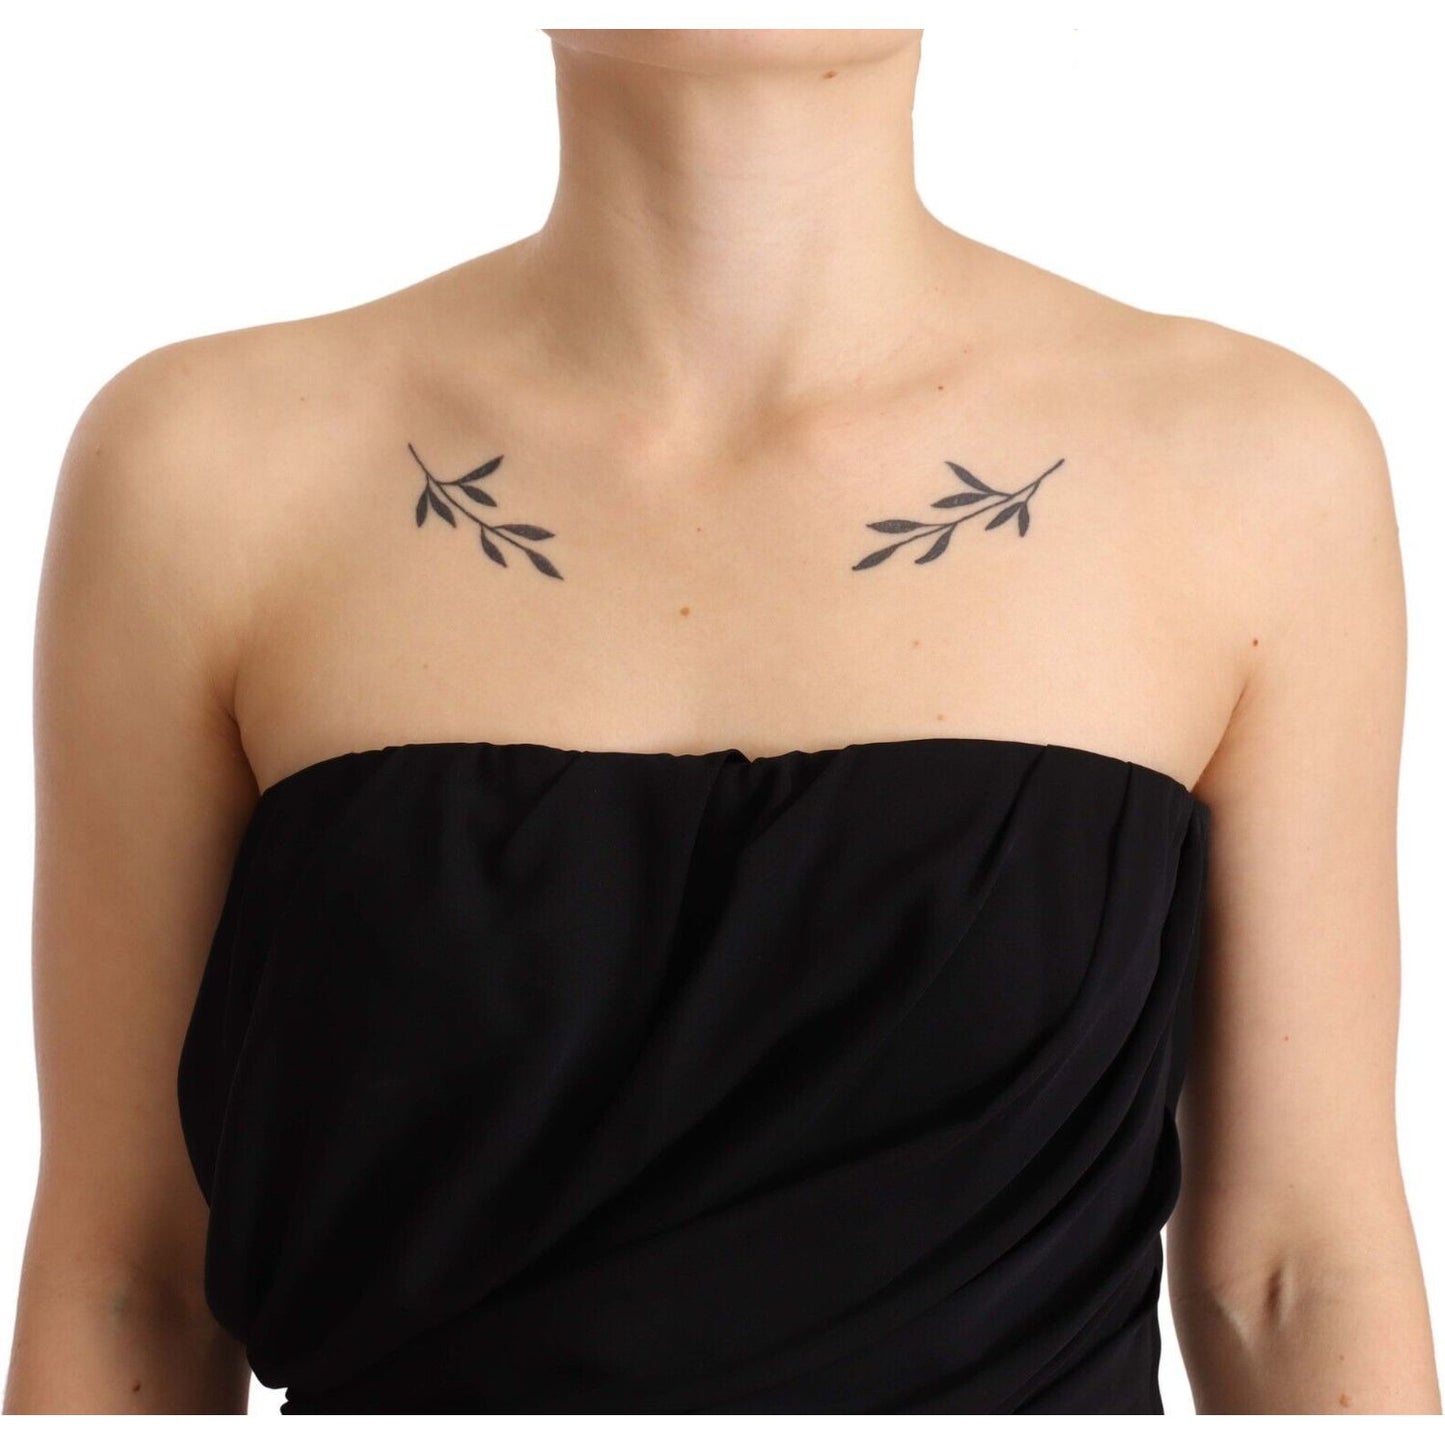 Dolce & Gabbana Elegant Strapless Silk Midi Dress black-silk-stretch-strapless-sheath-midi-dress